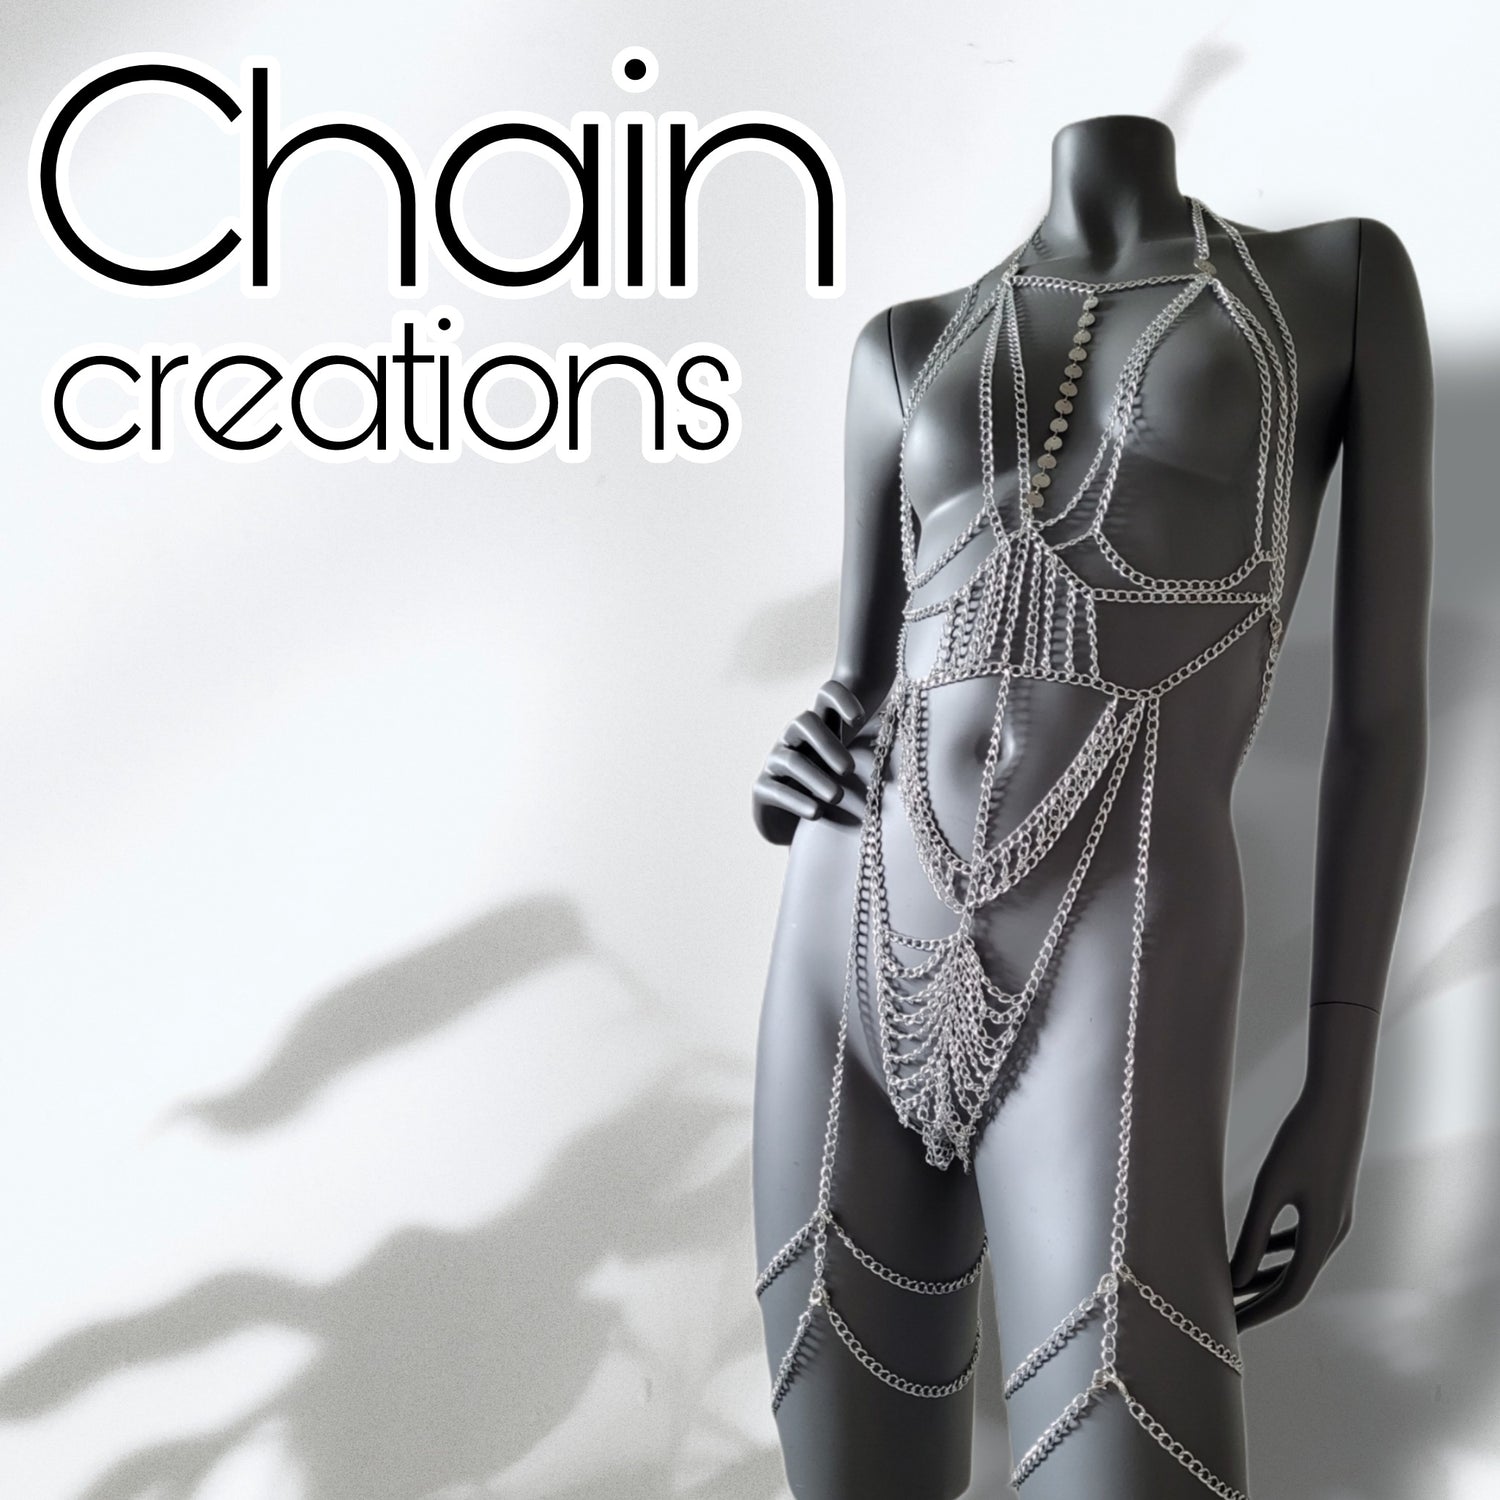 Chain creations